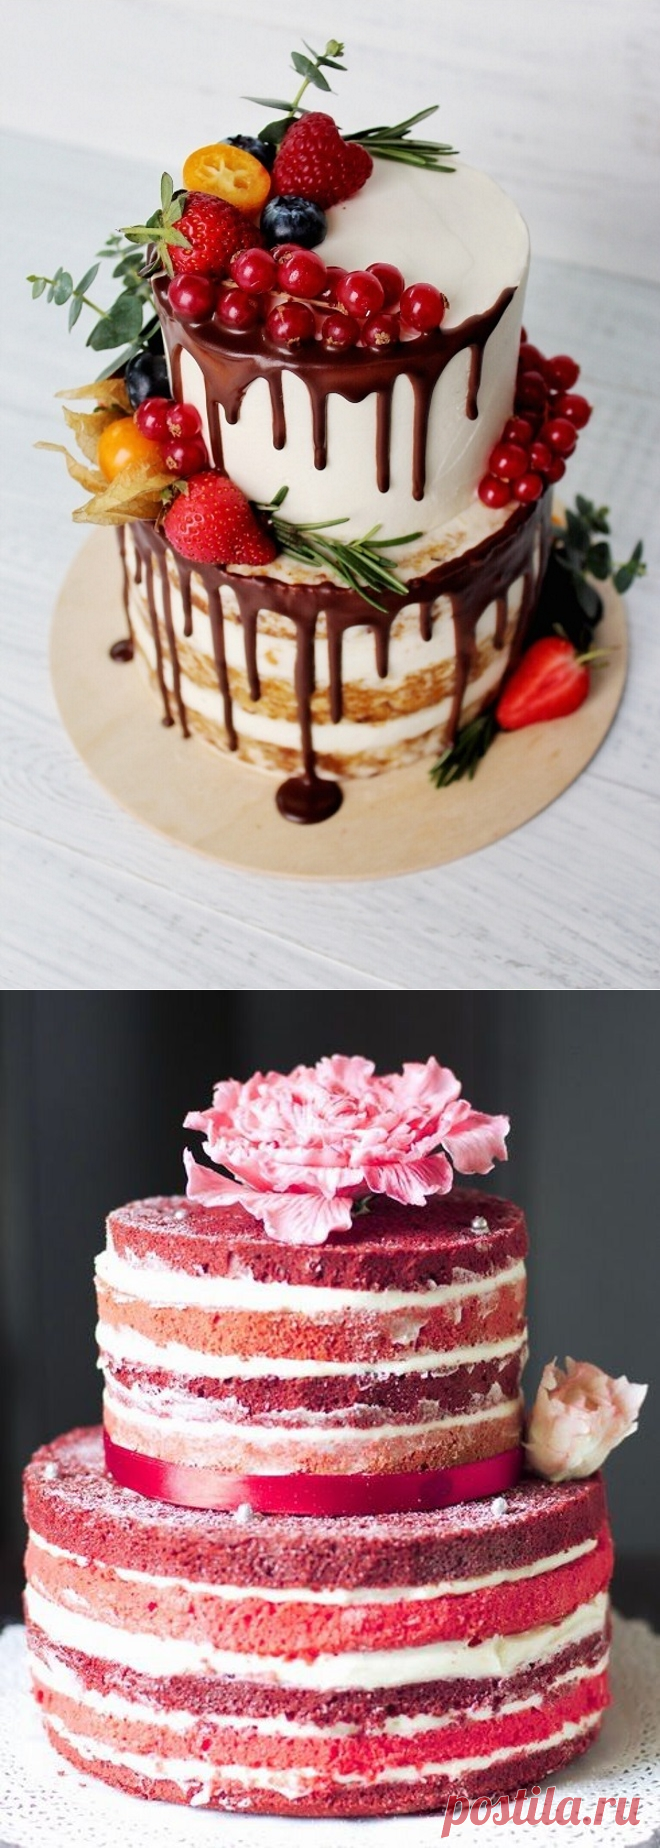 Трехъярусный торт в домашних условиях - Простые рецепты вкусных десертов